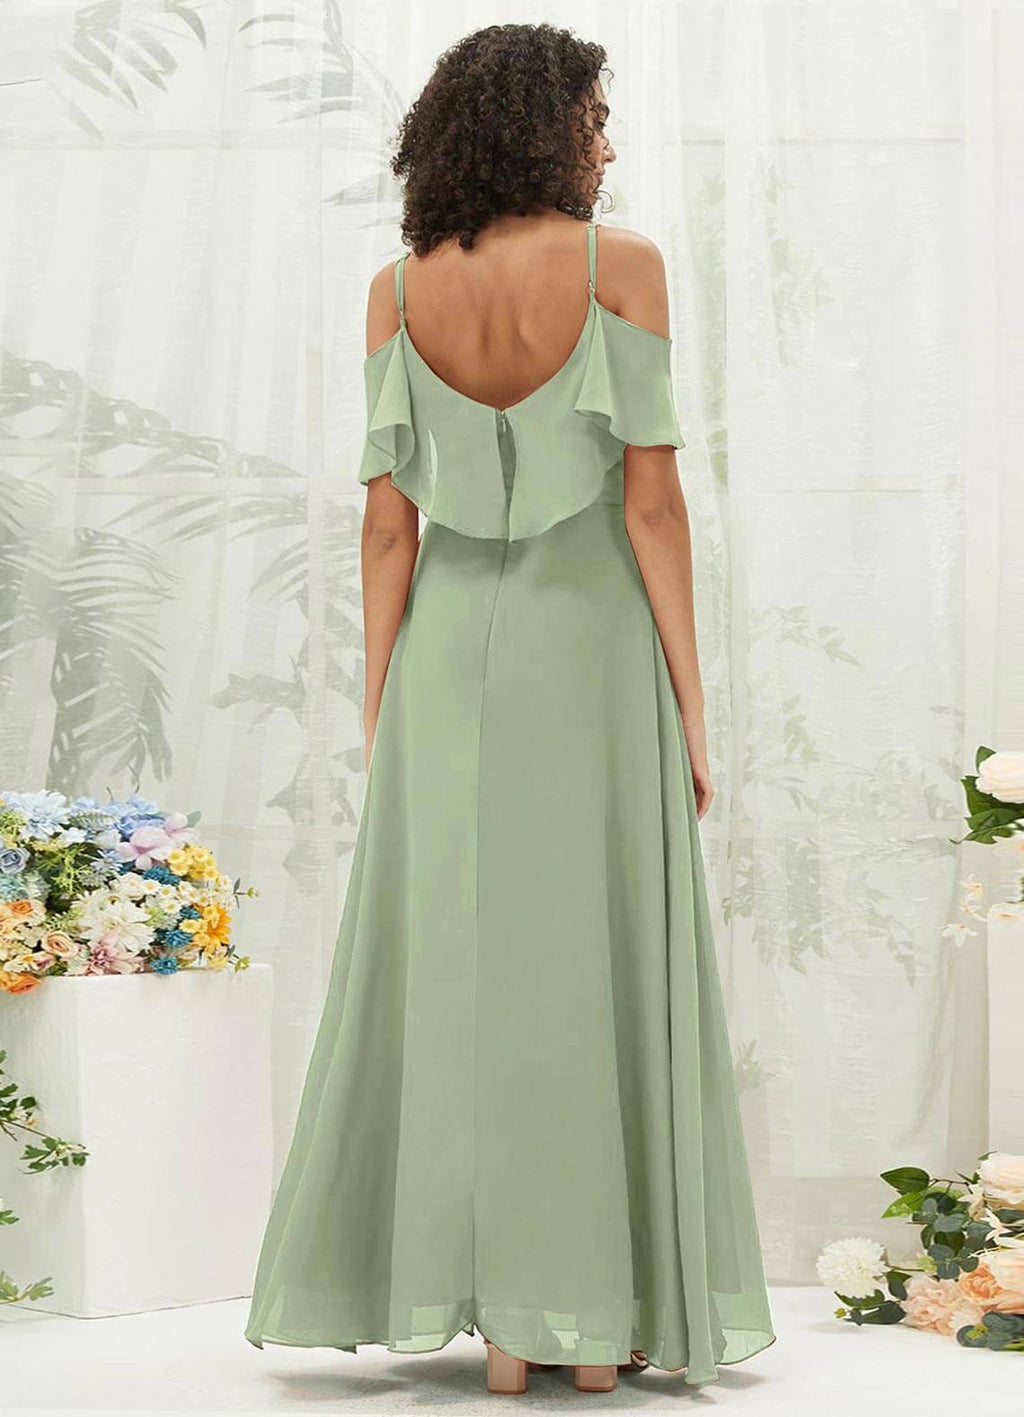 NZ Bridal Sage Green Chiffon Flowy Floor Length Bridesmaid Dress with Slit AM31003 Fiena a